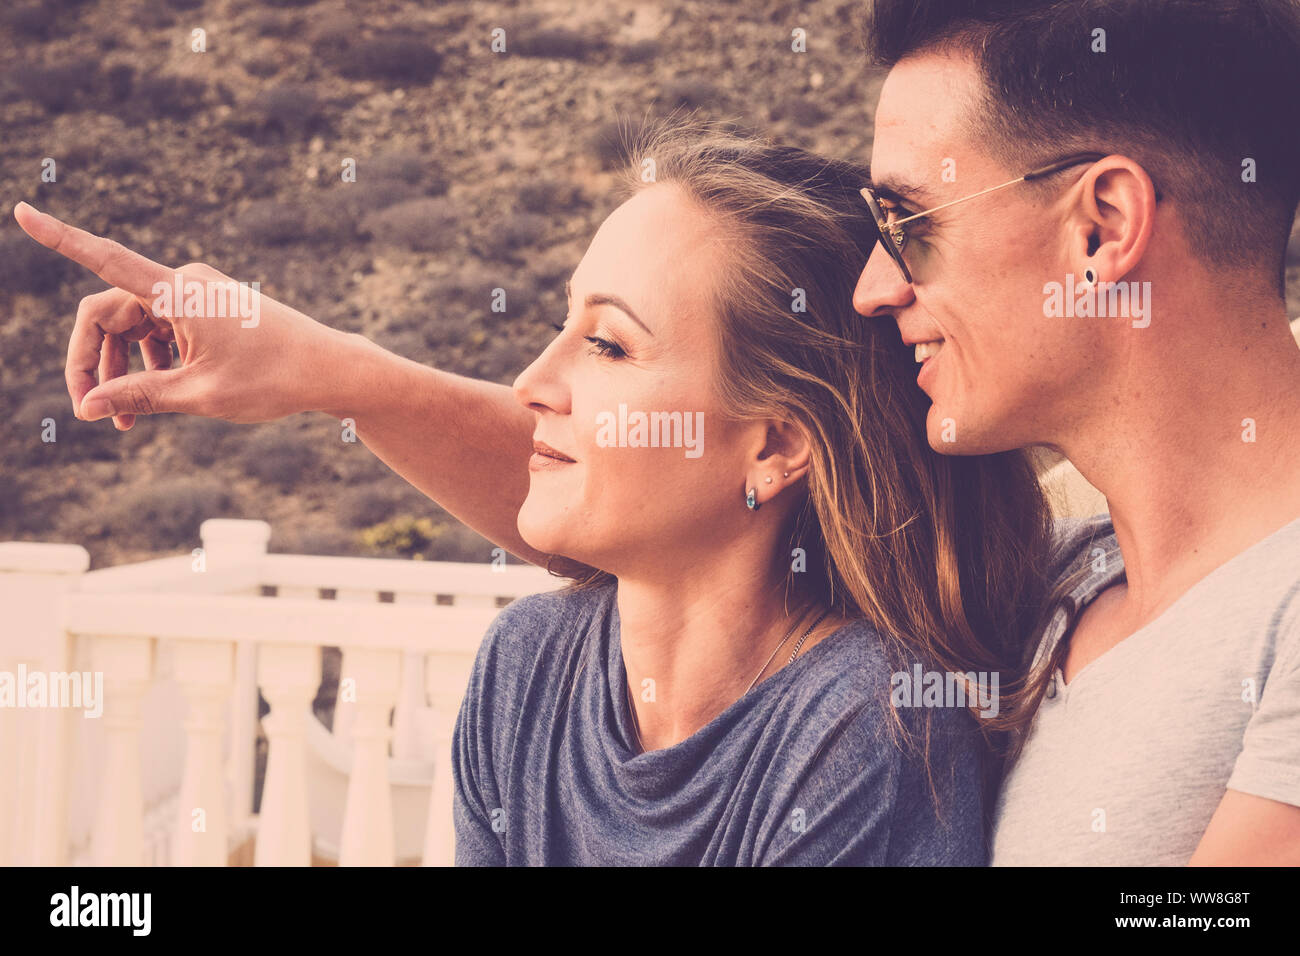 Schön Schön kaukasischen Paar lächeln und schauen vor Ihnen, der junge Mann zeigen, die Dame etwas weit, Sommertag mit Sonnenlicht, Vintage Farben Filter, nette Leute im Freien auf der Terrasse Stockfoto